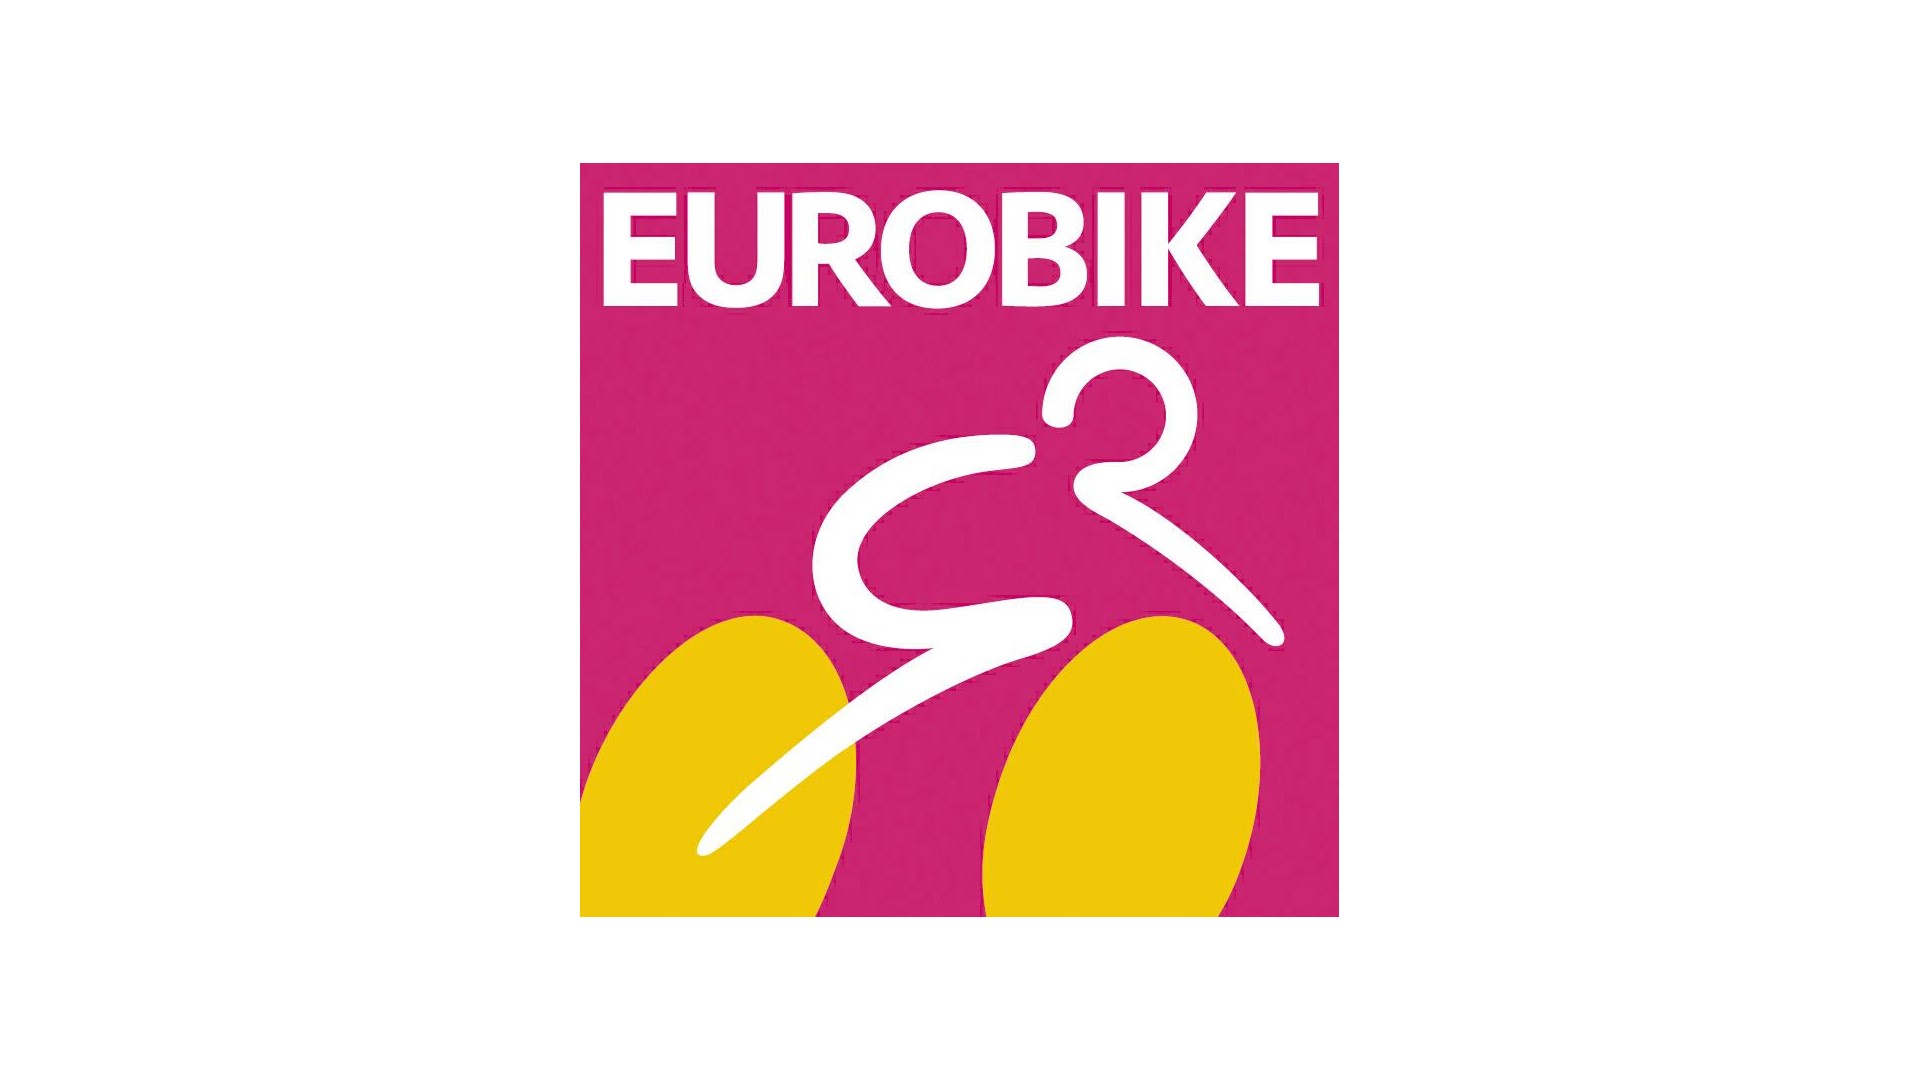 Eurobike trade fair